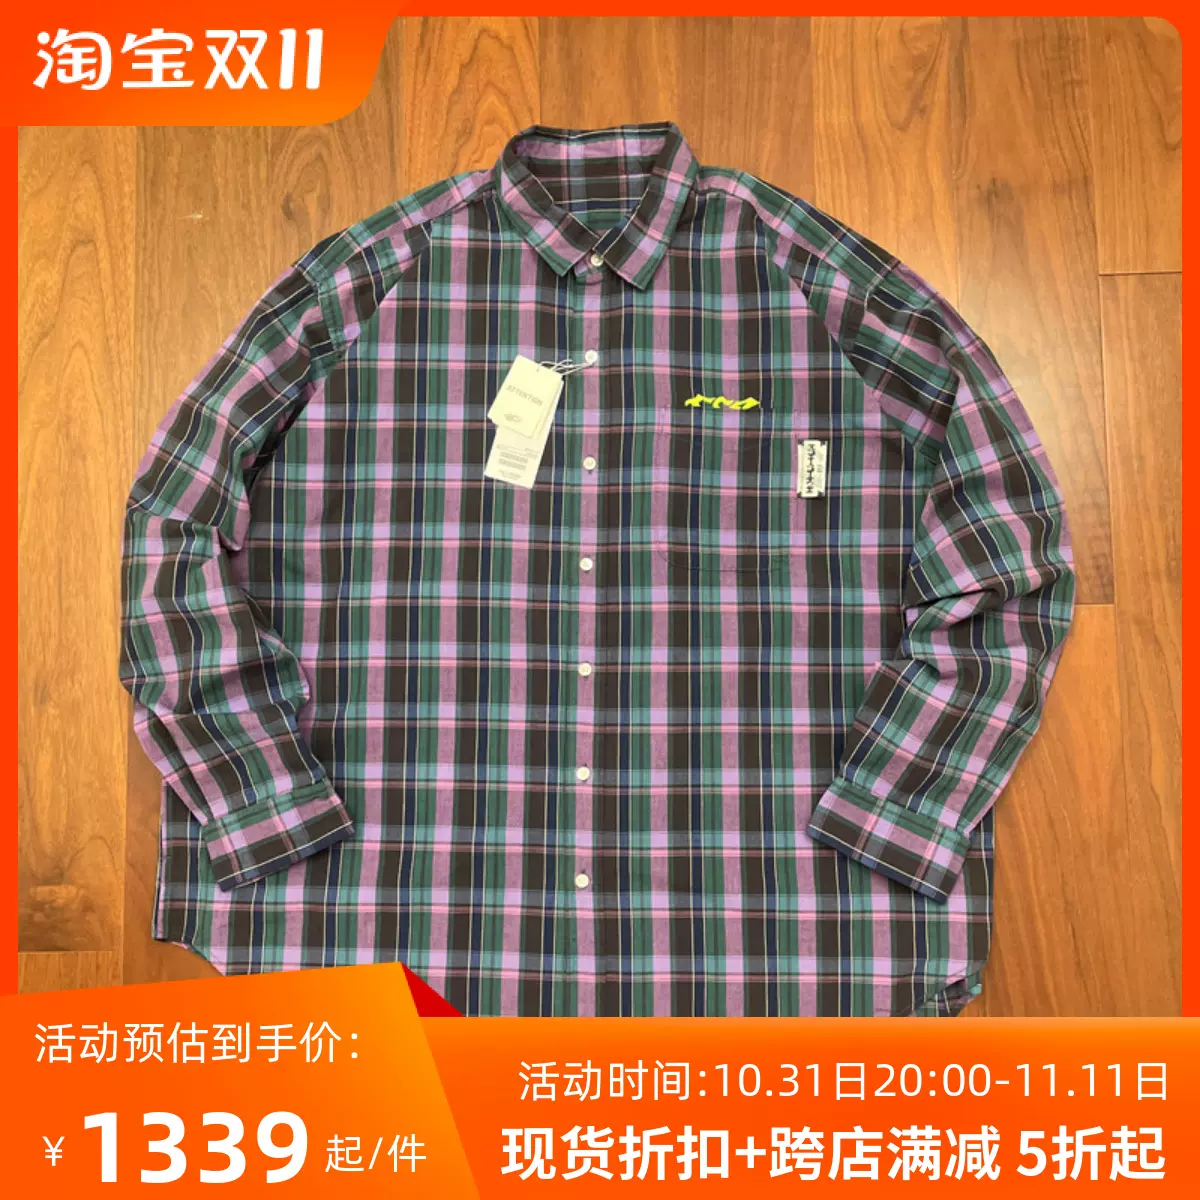 國倉BEAMS JAPAN X SSZ MADRAS SHIRT 刺繡標格子長袖襯衫23SS-Taobao